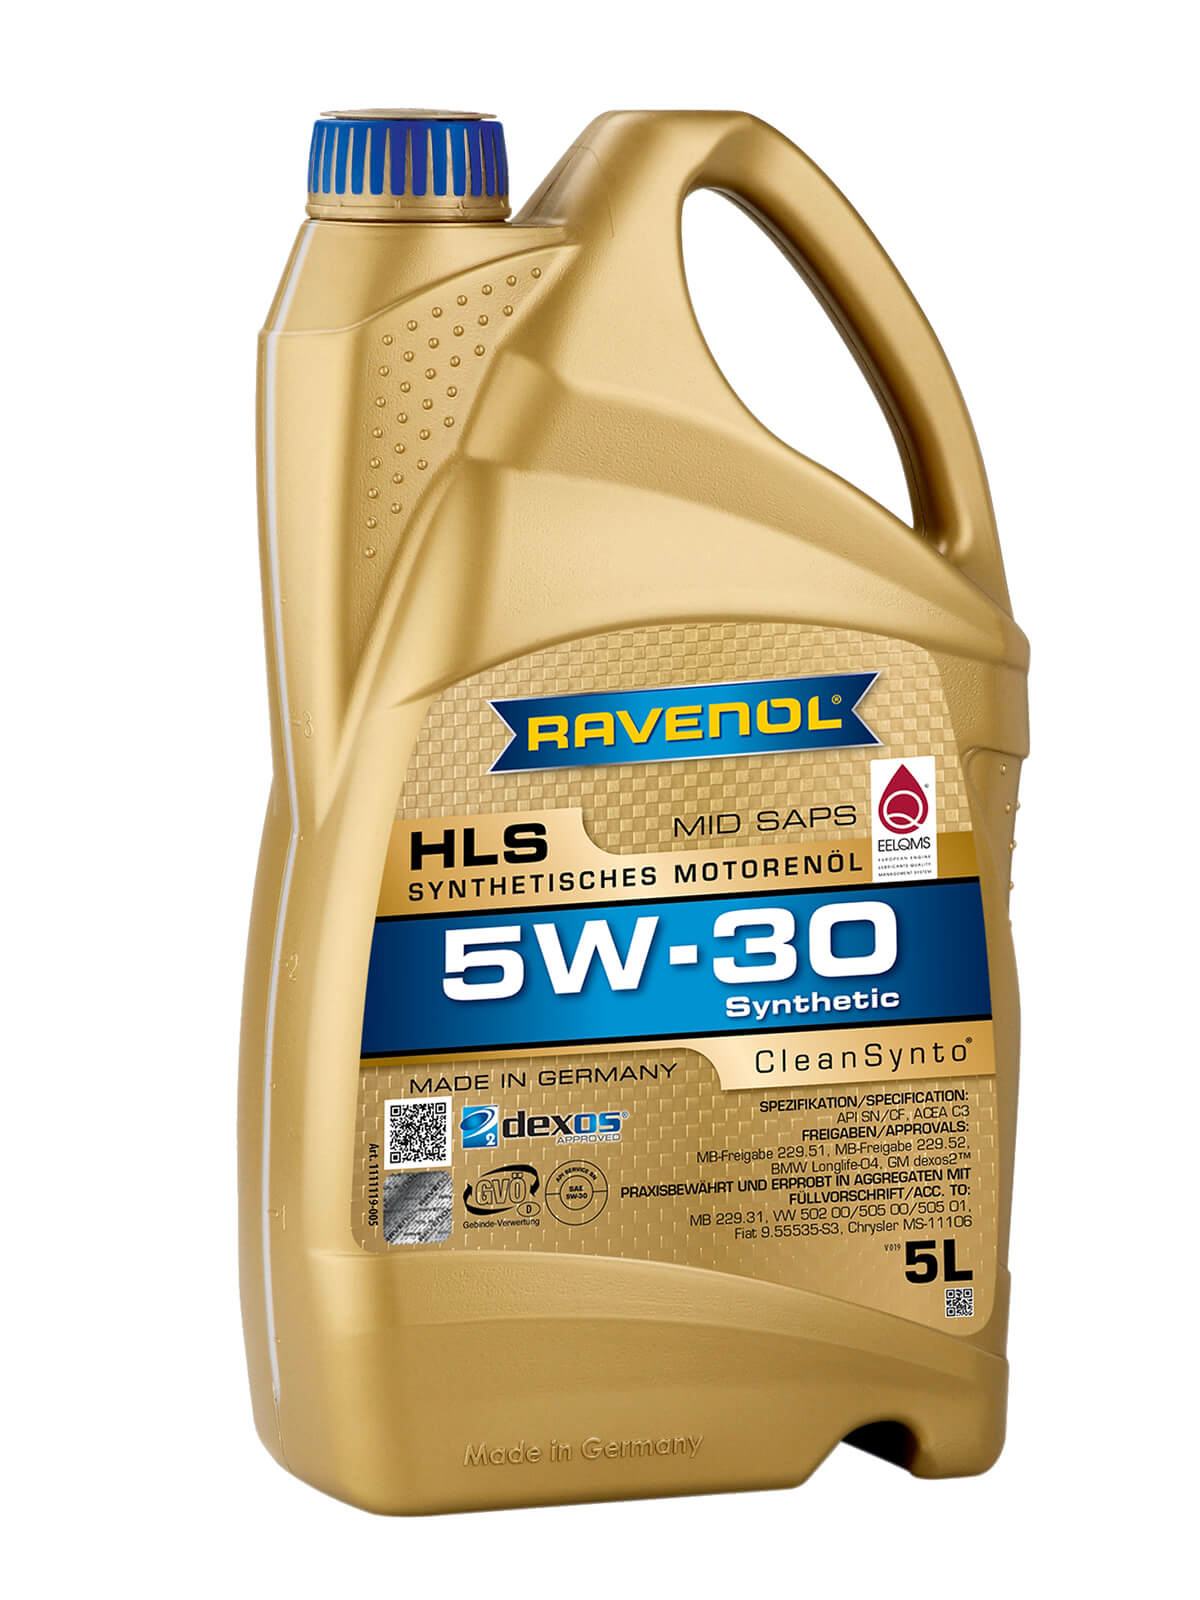 Motoröl Ravenol HLS 5W-30 (Mid SAPS) direkt im Ravenol Shop kaufen